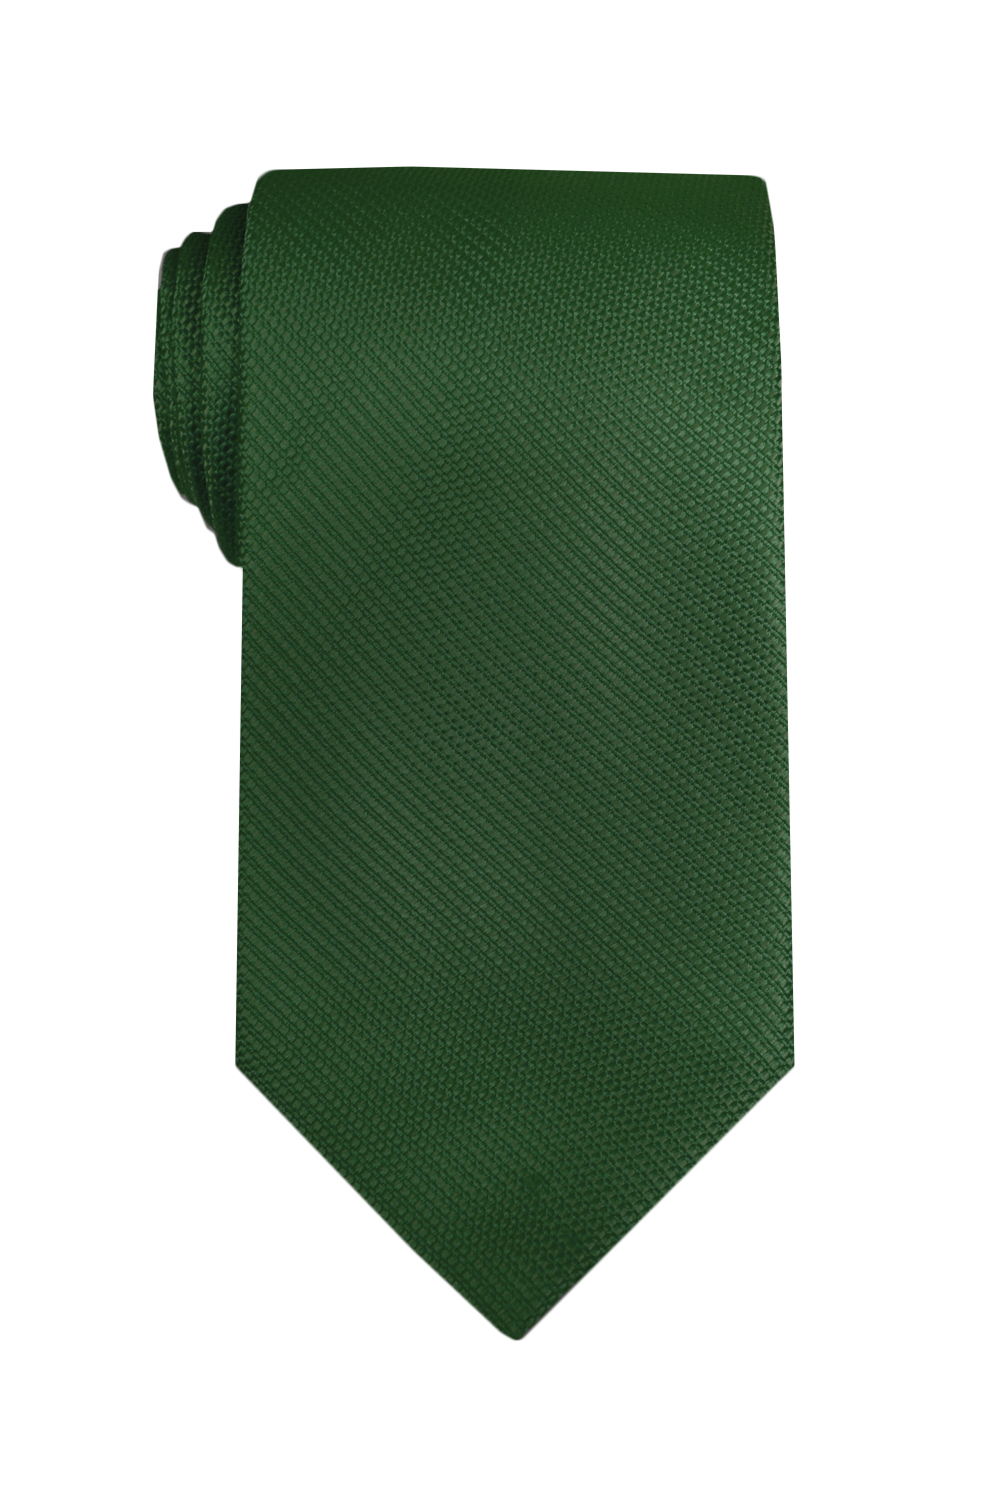 TigerTie cravatta verde scuro oliv monocromatico Uni